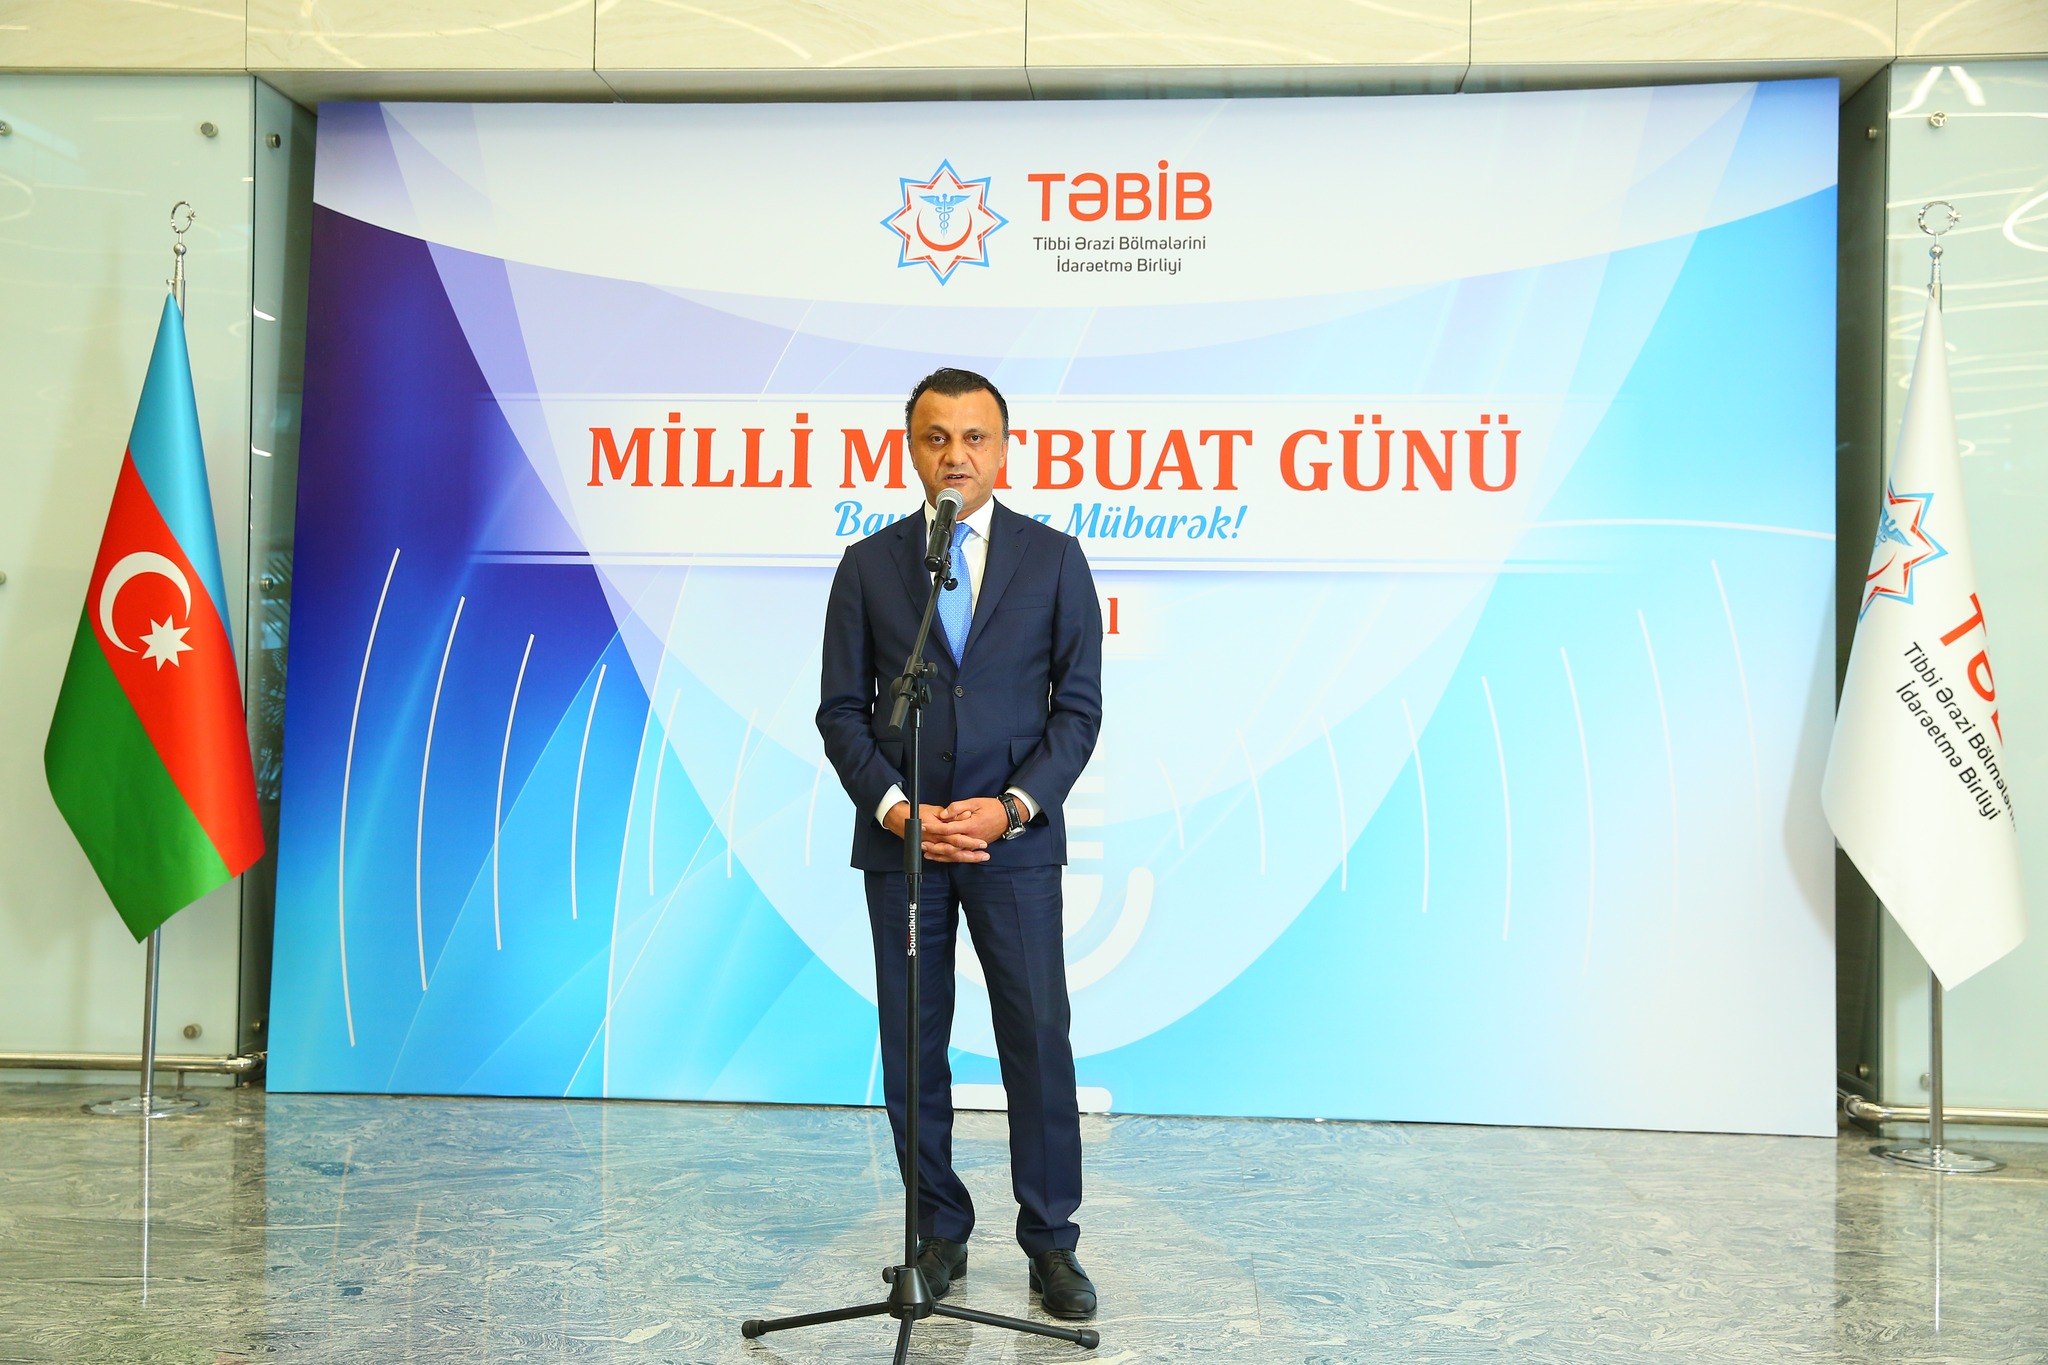 TƏBİB-in təşkilatçılığı ilə Milli Mətbuat Gününə həsr olunan tədbir keçirilib